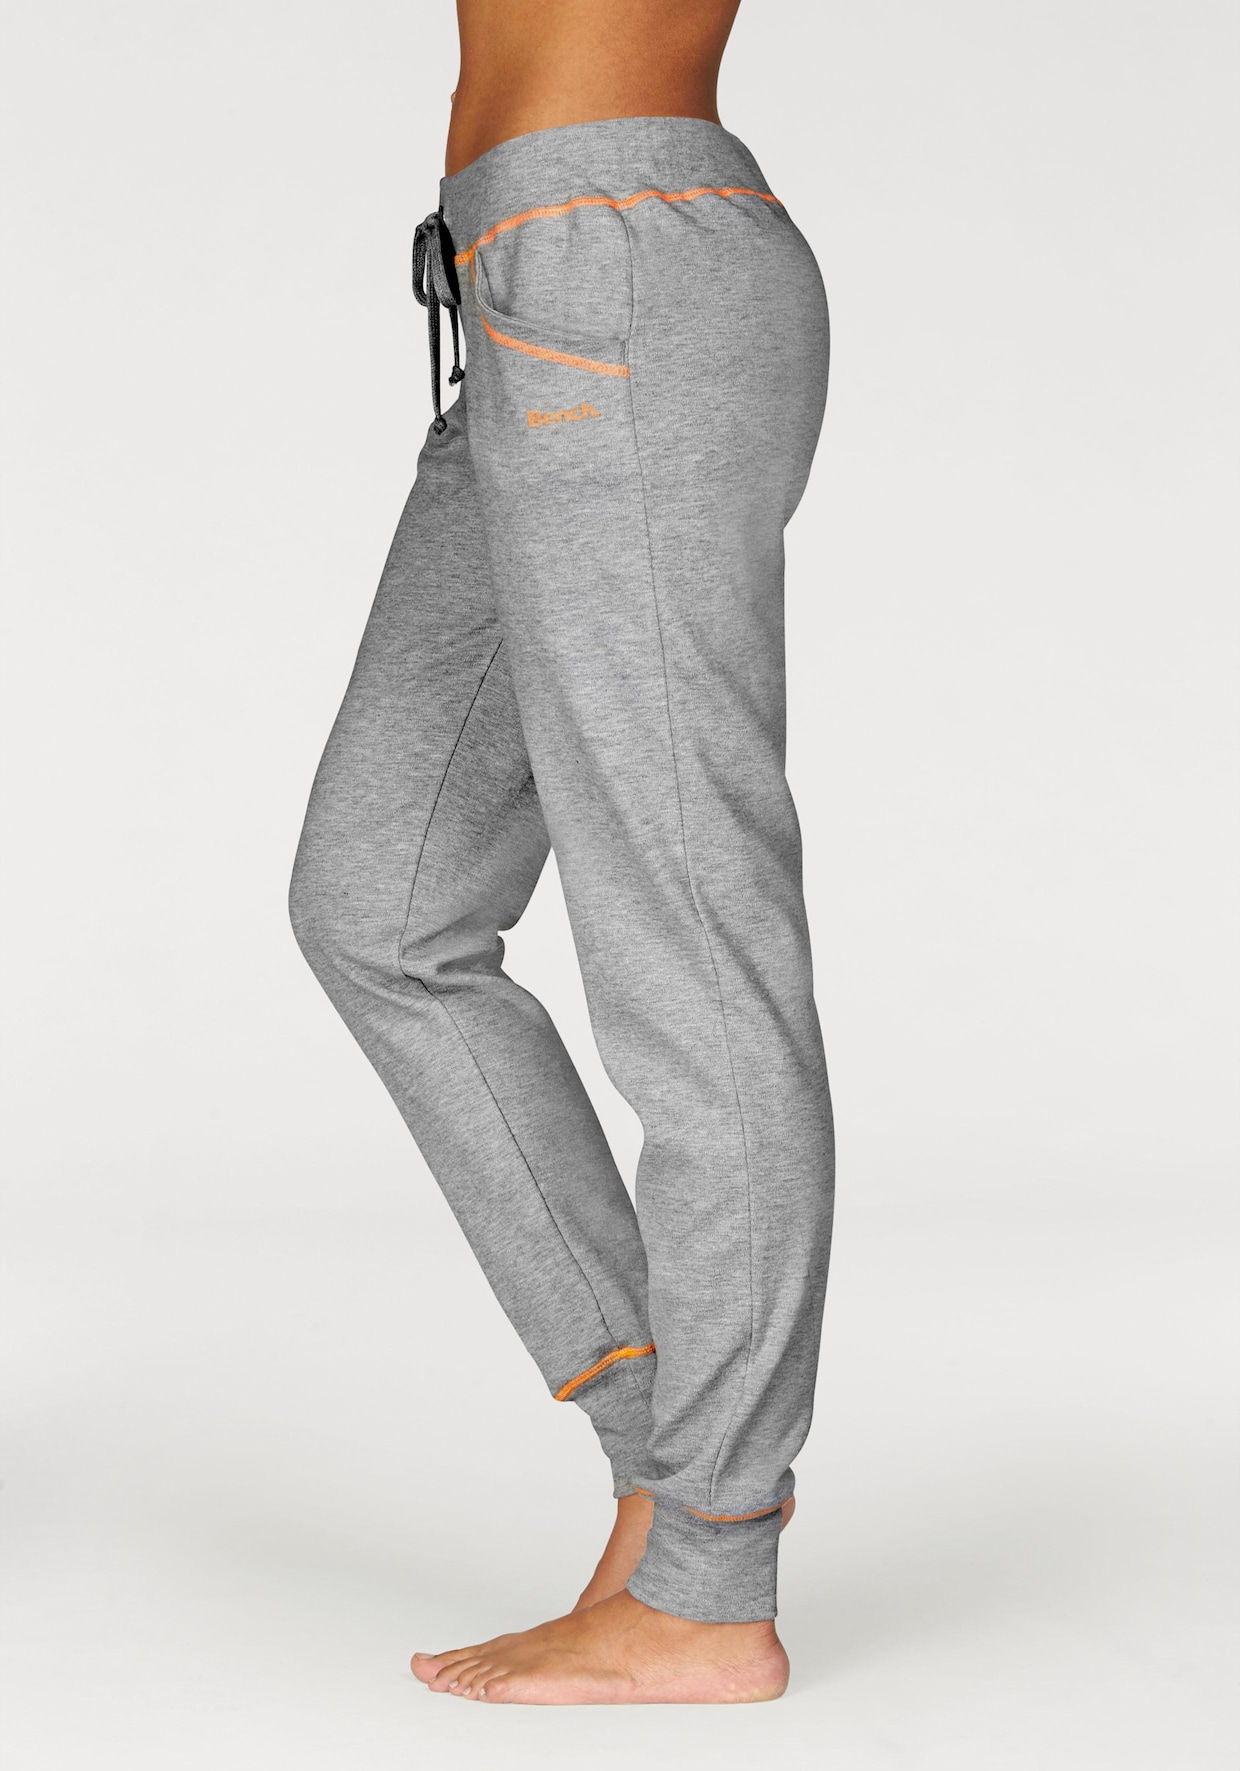 Pantalon détente - gris clair-orange